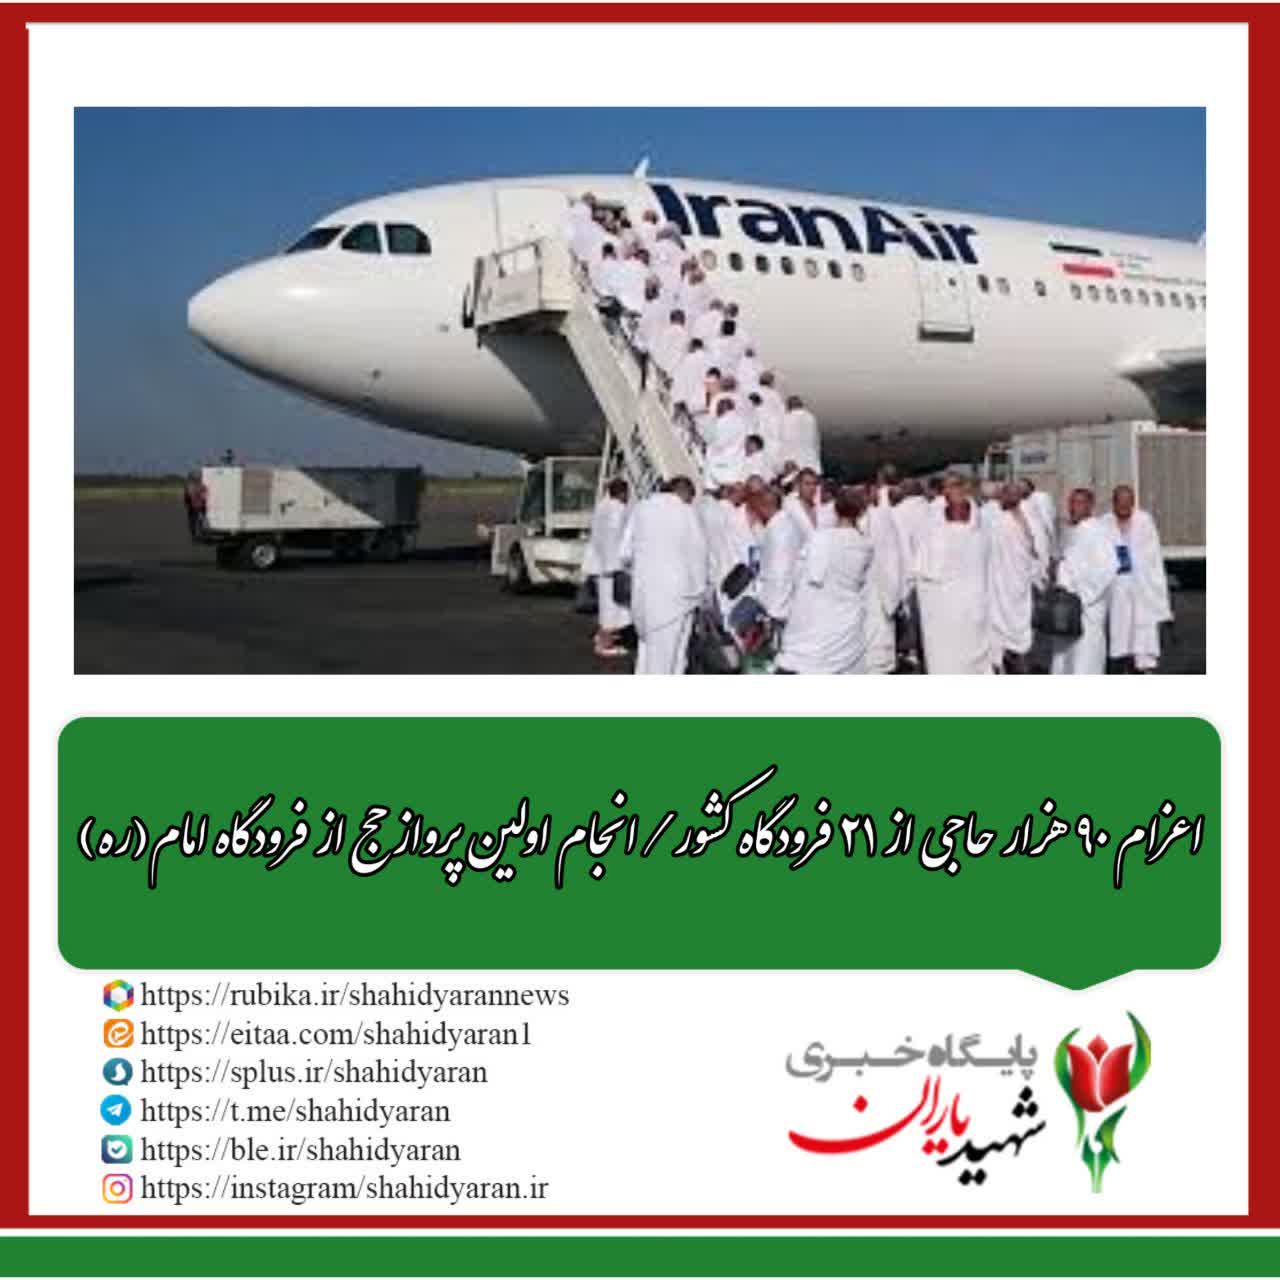 اعزام ۹۰ هزار حاجی از ۲۱ فرودگاه کشور / انجام اولین پرواز حج از فرودگاه امام(ره)